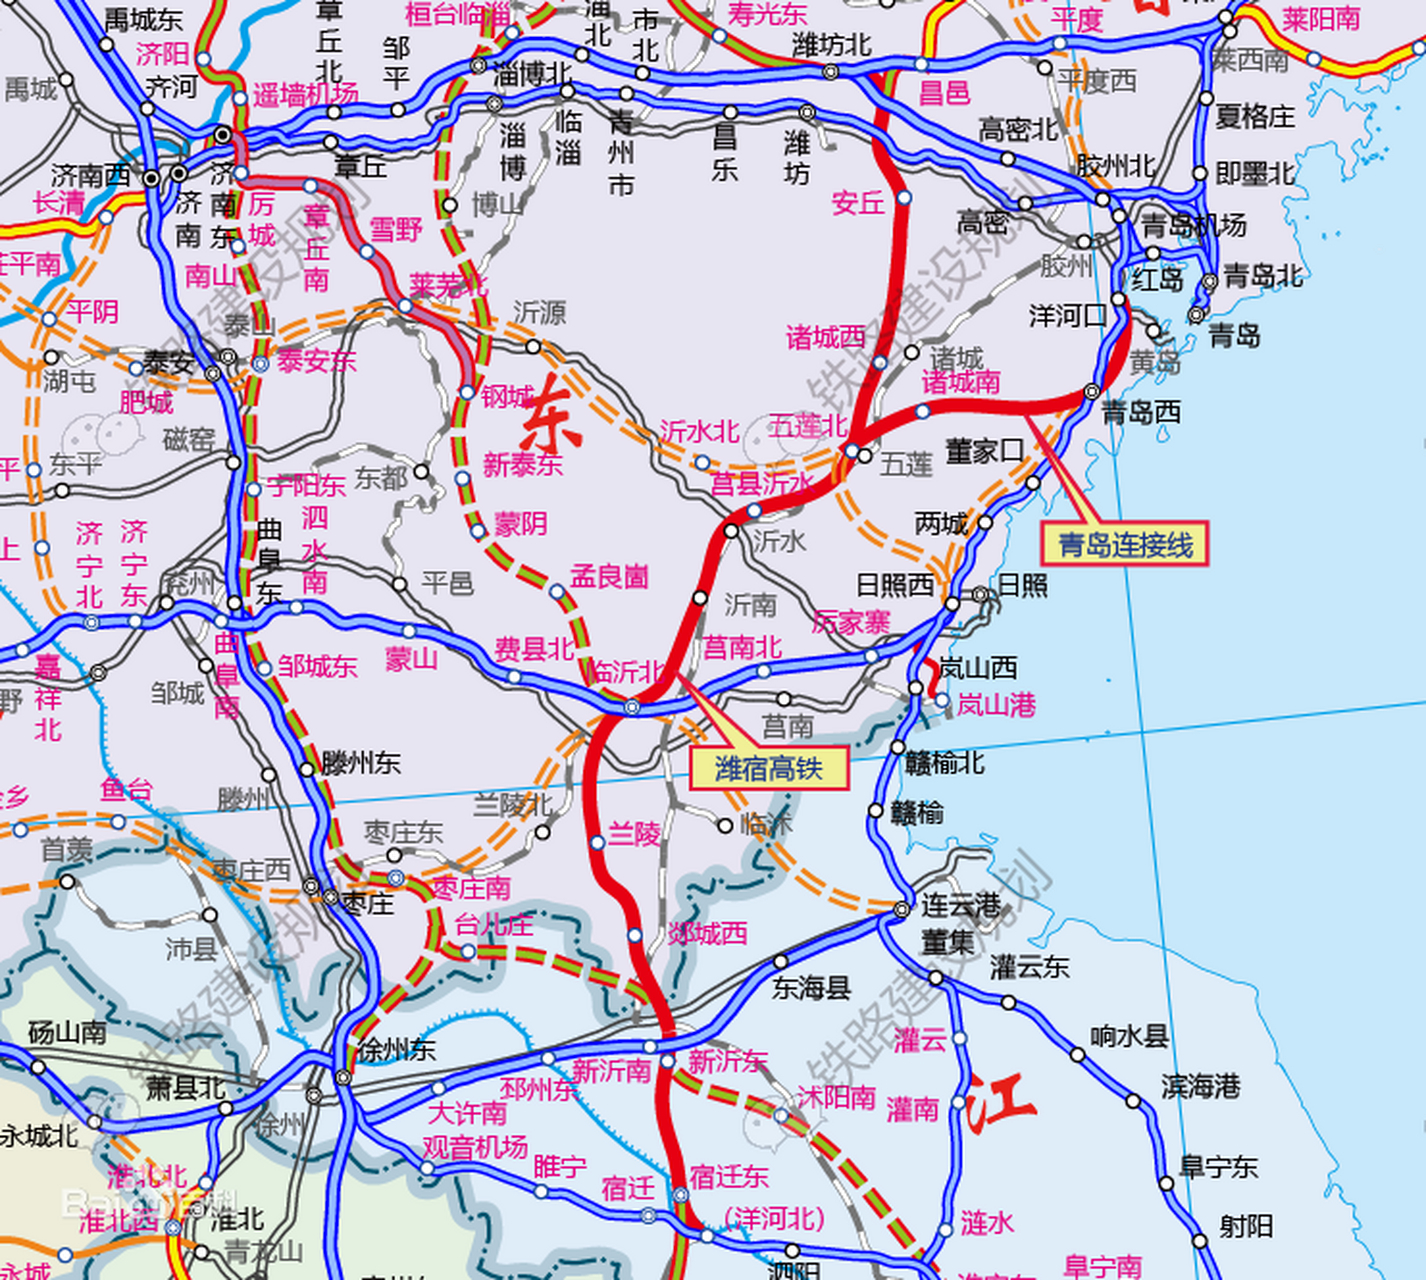 其实这就是京沪二线其中的一段,潍坊通往宿迁的高速铁路